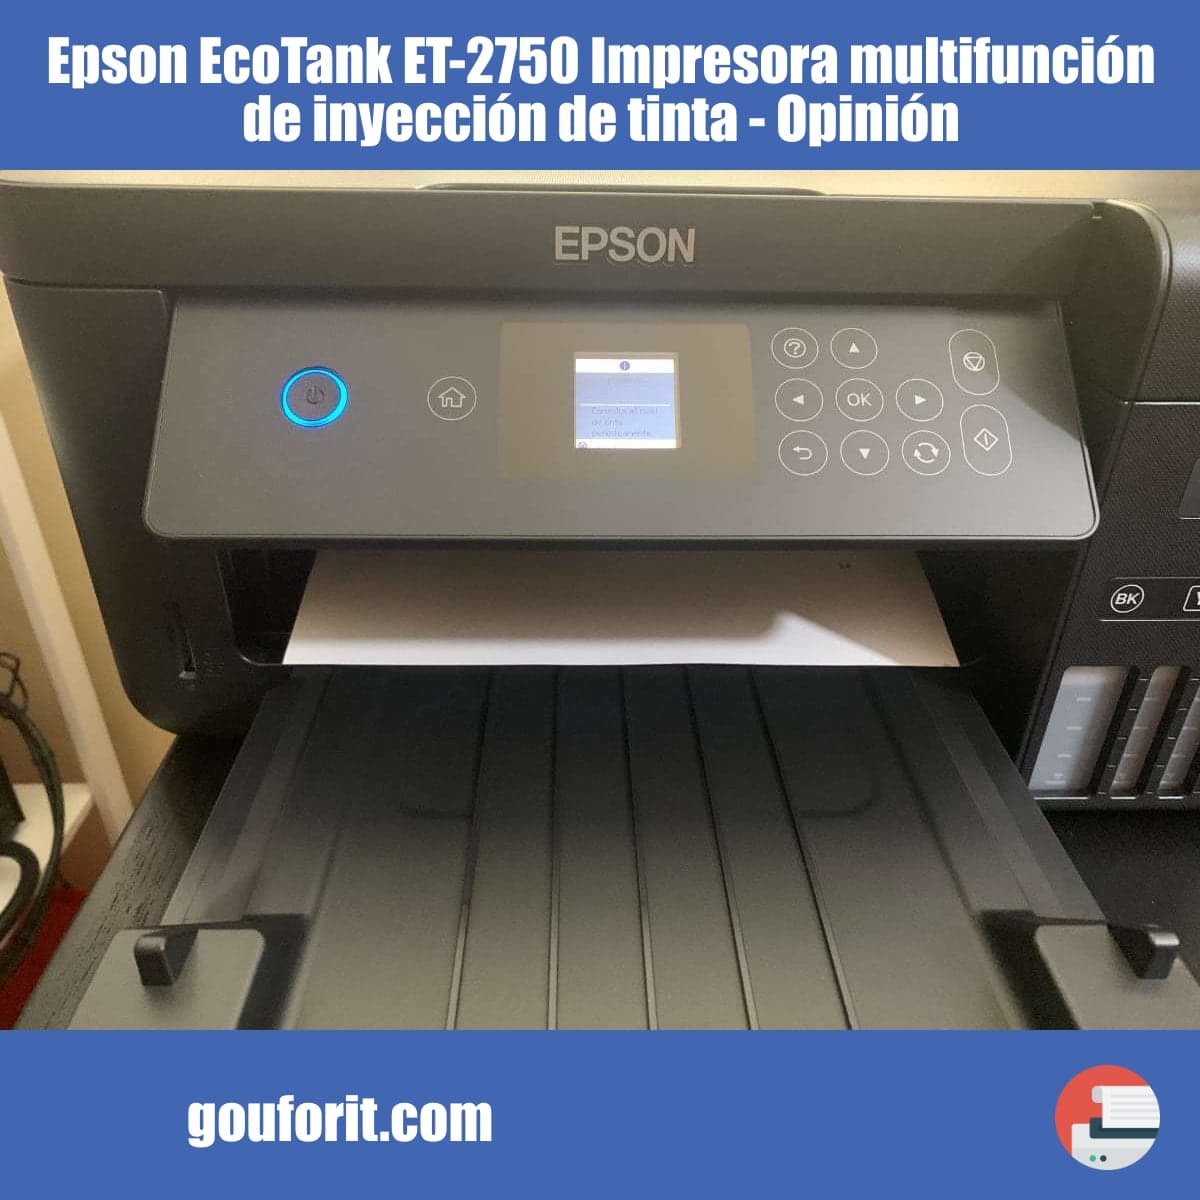 Epson EcoTank ET-2750 Impresora multifunción de inyección de tinta - Opinión y review